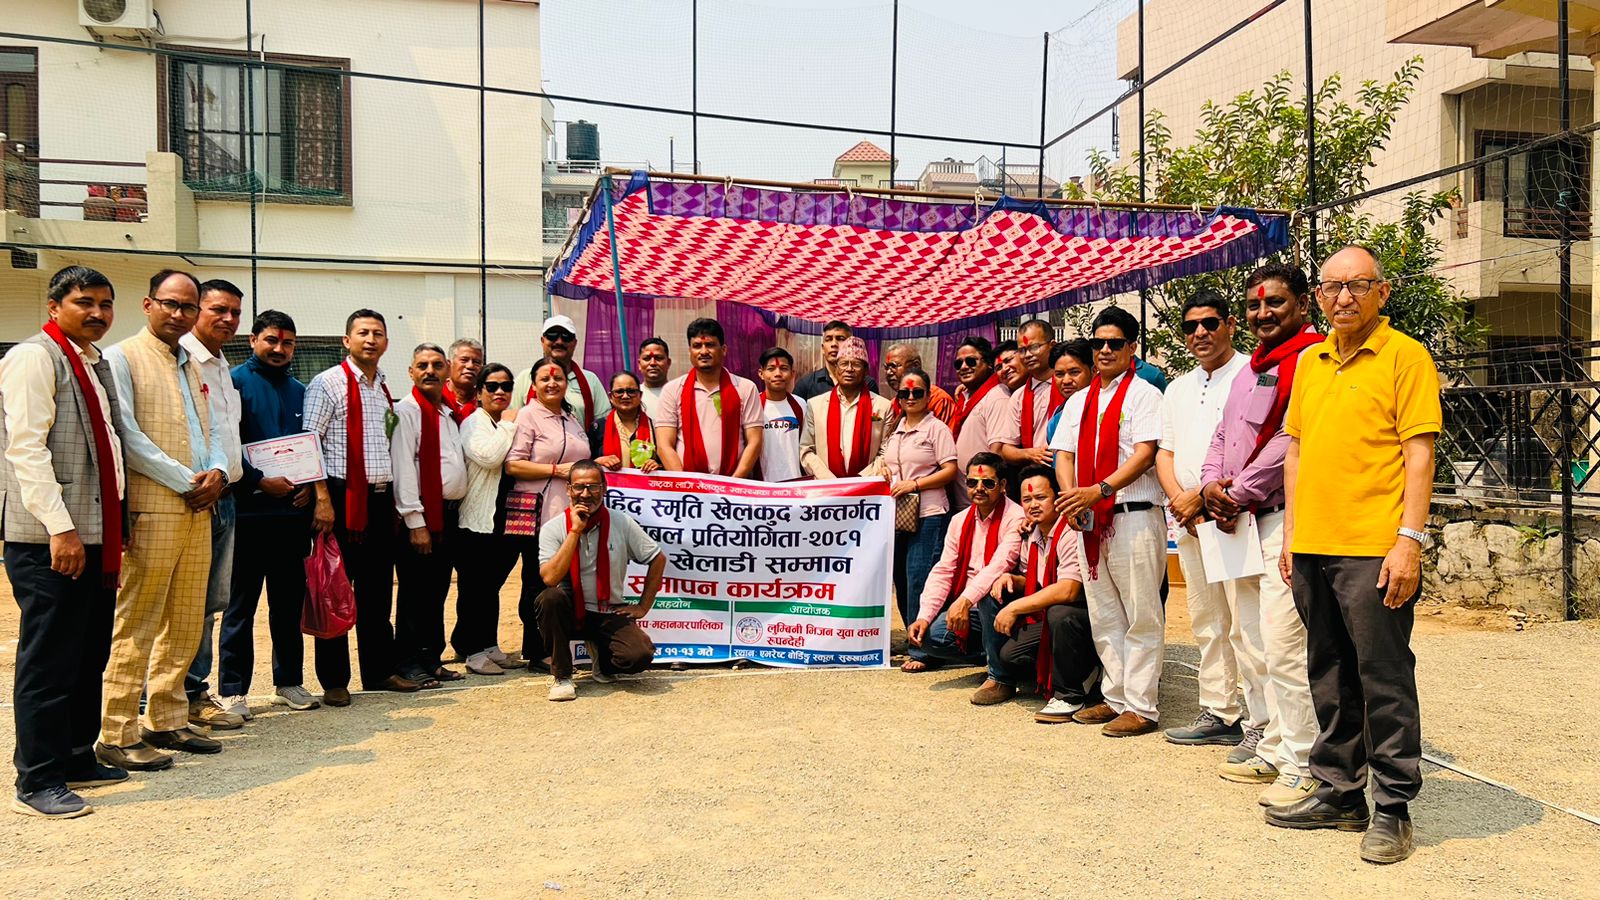 लुम्बिनी भिजनको प्रथम भलिबल प्रतियोगिता सम्पन्न : फाईनल खेलमा शहिद स्मृति क्लब बुटवल विजयी